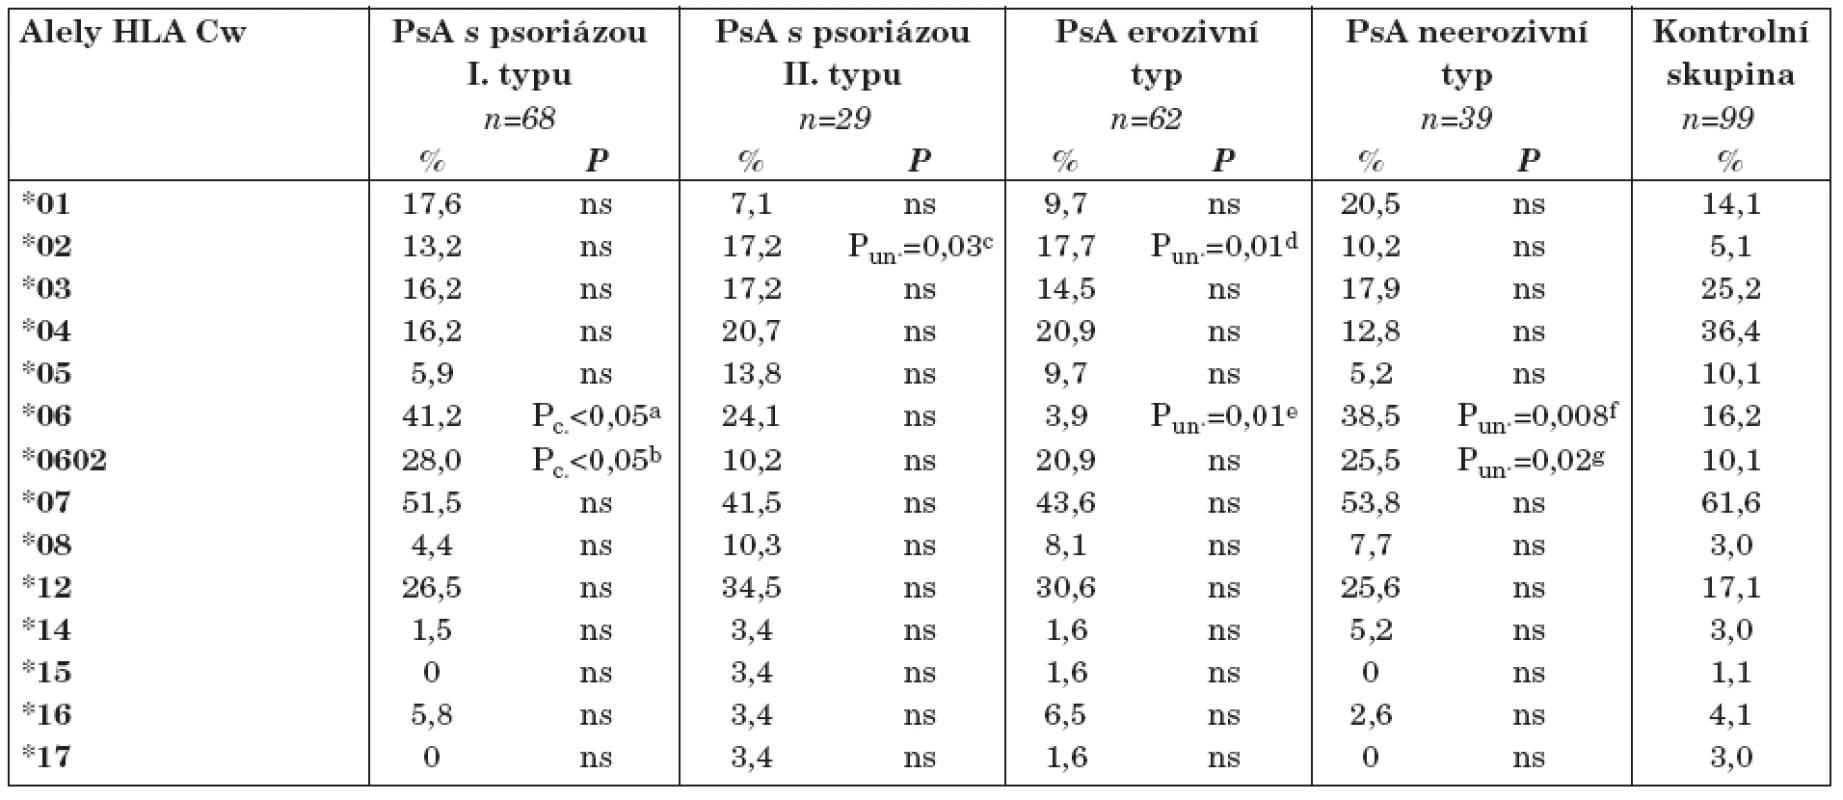 Frekvence jednotlivých alel HLA - Cw mezi nemocnými s PsA vzhledem k jejich klinické charakteristice.